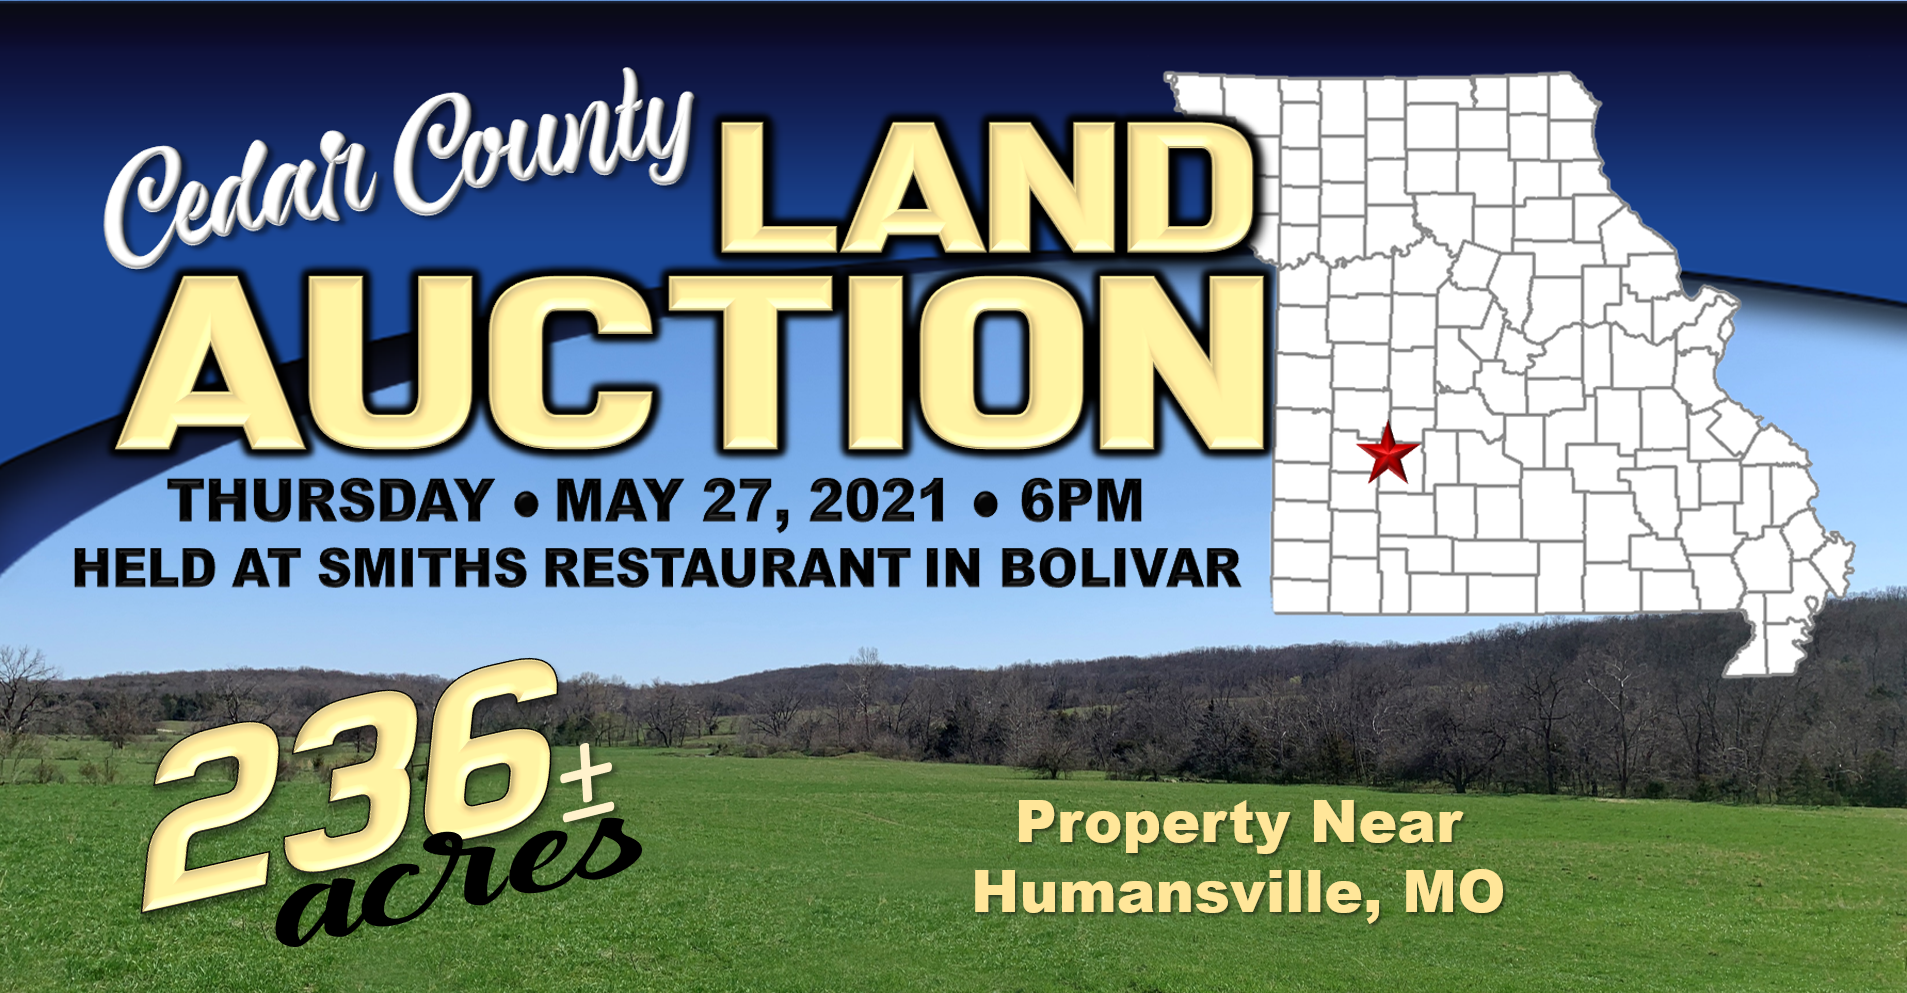 Cedar County Land Auction – 236+/- Acres